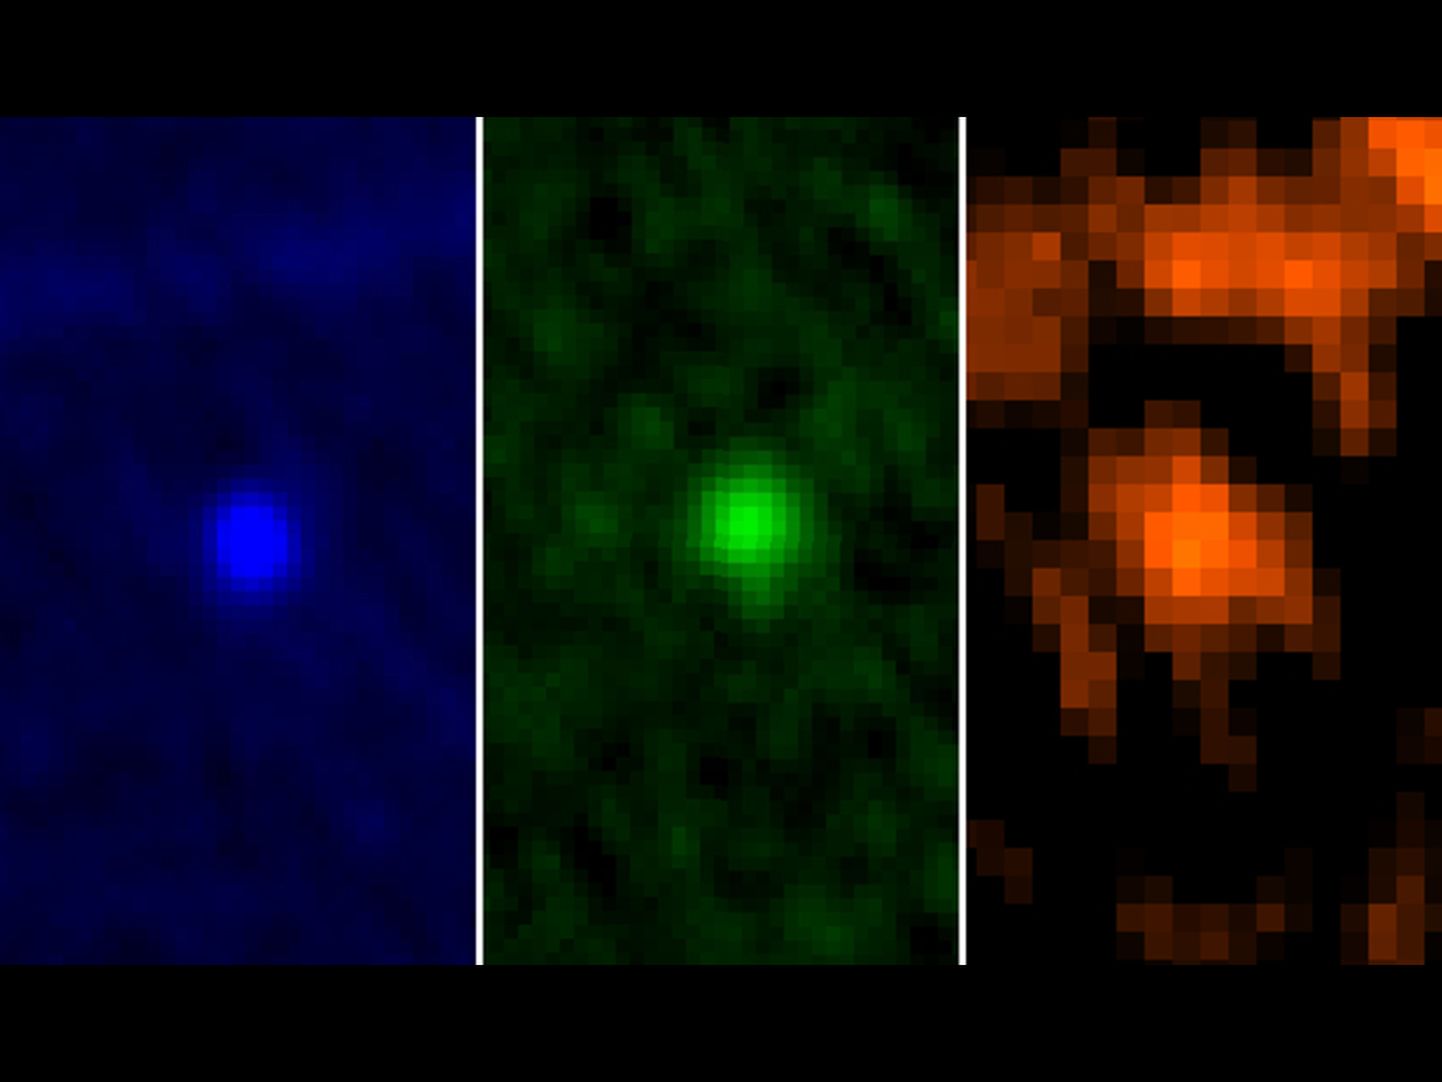 Herscheli kosmoseobservatooriumi fotod asteroid Apophisest